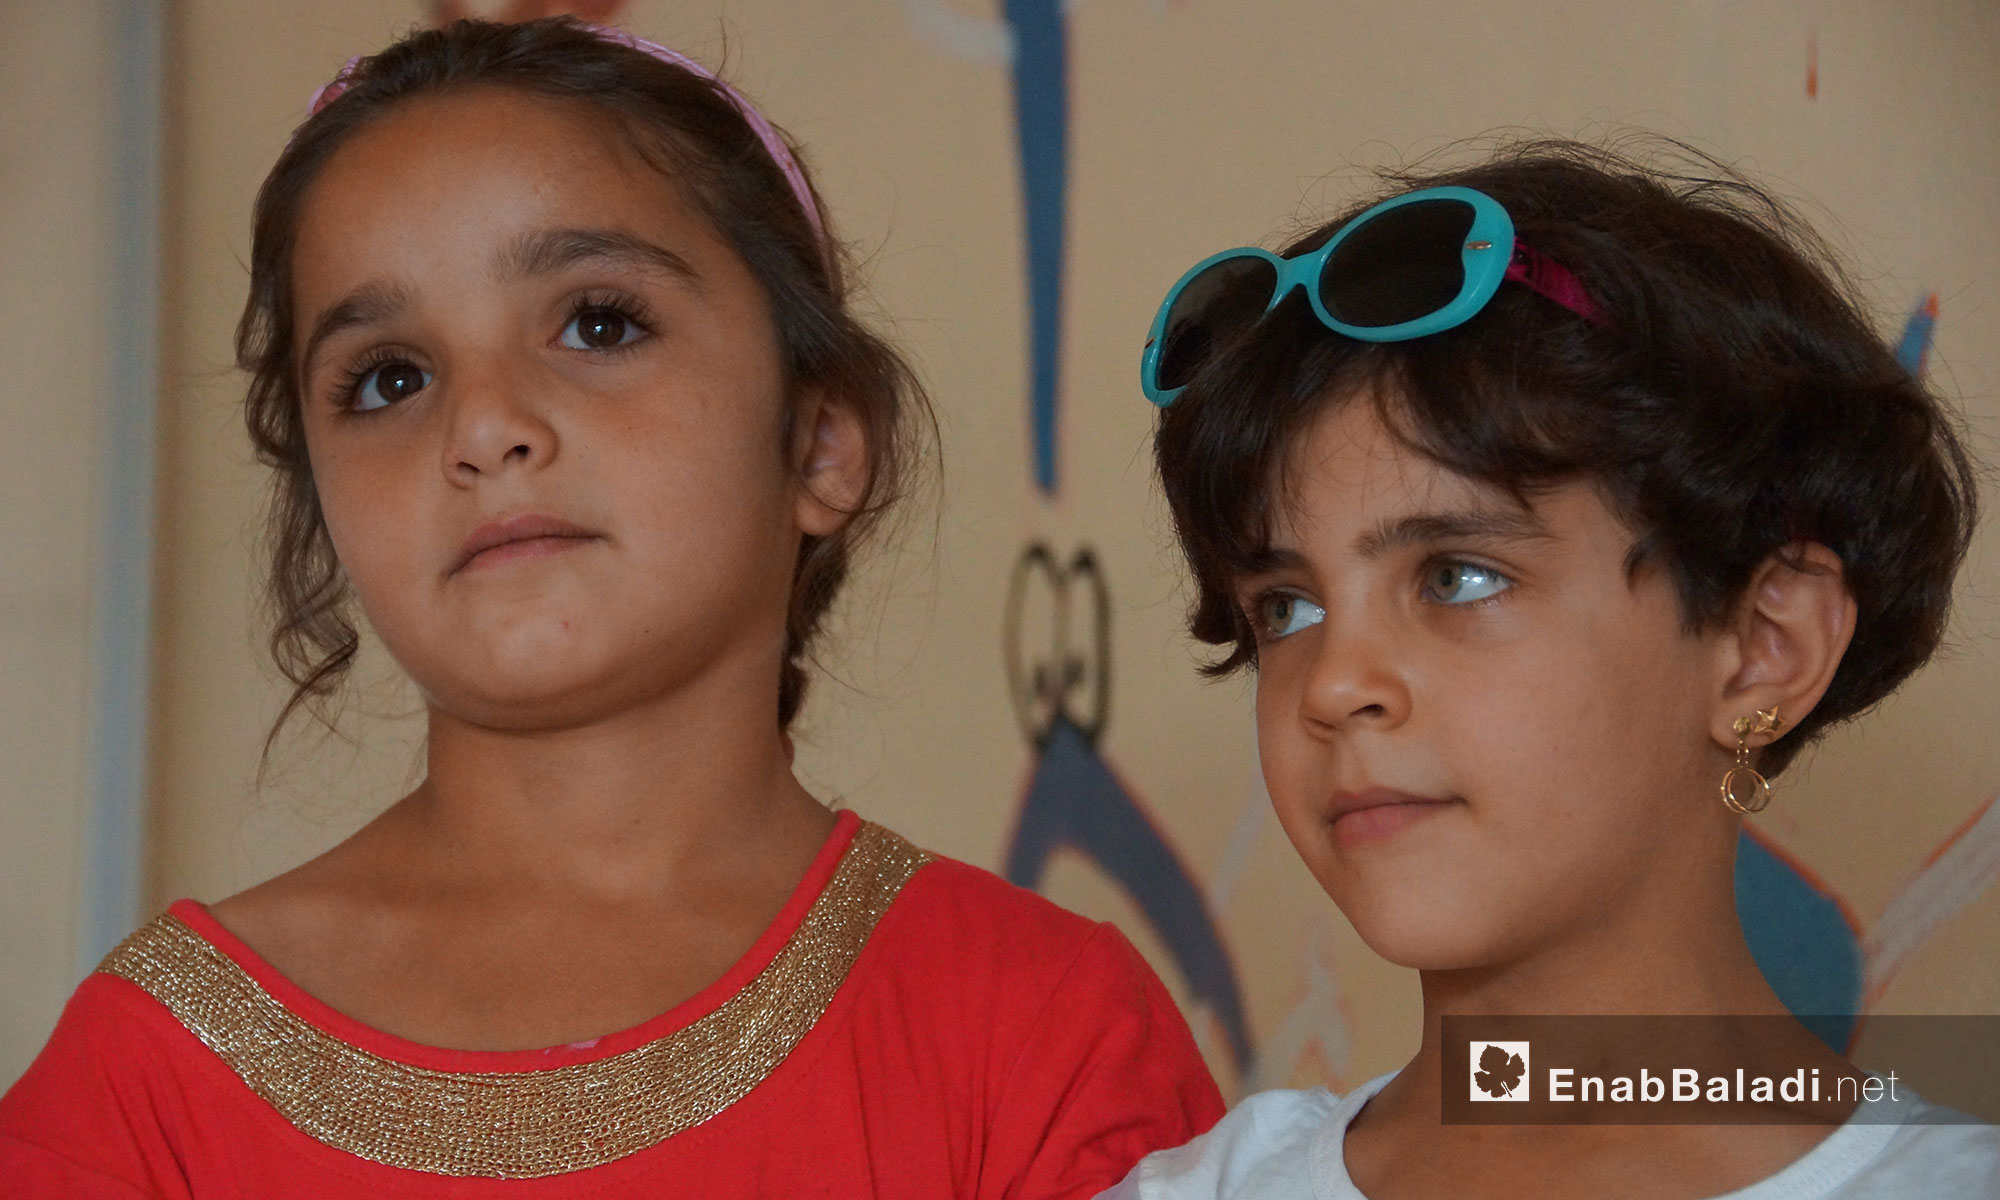 روضة مجانية خاصة  للأطفال الأيتام من حماه وادلب في بلدة كفرسجنة - 25 تموز 2018 (عنب بلدي)